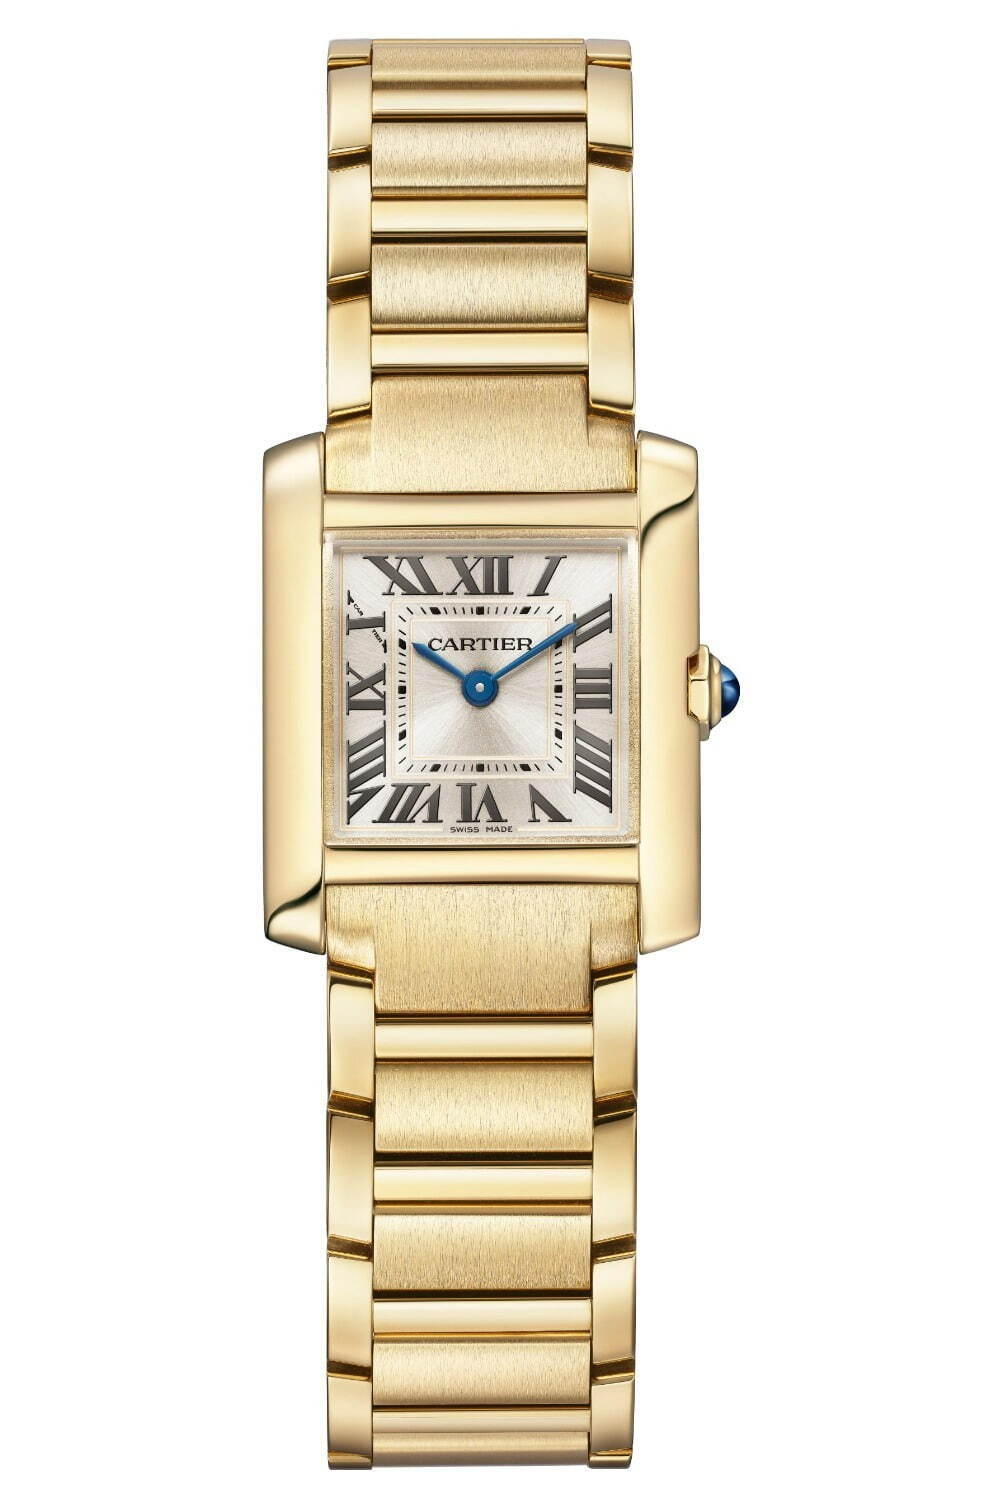 カルティエの腕時計「タンク フランセーズ」新作、ケース一体型